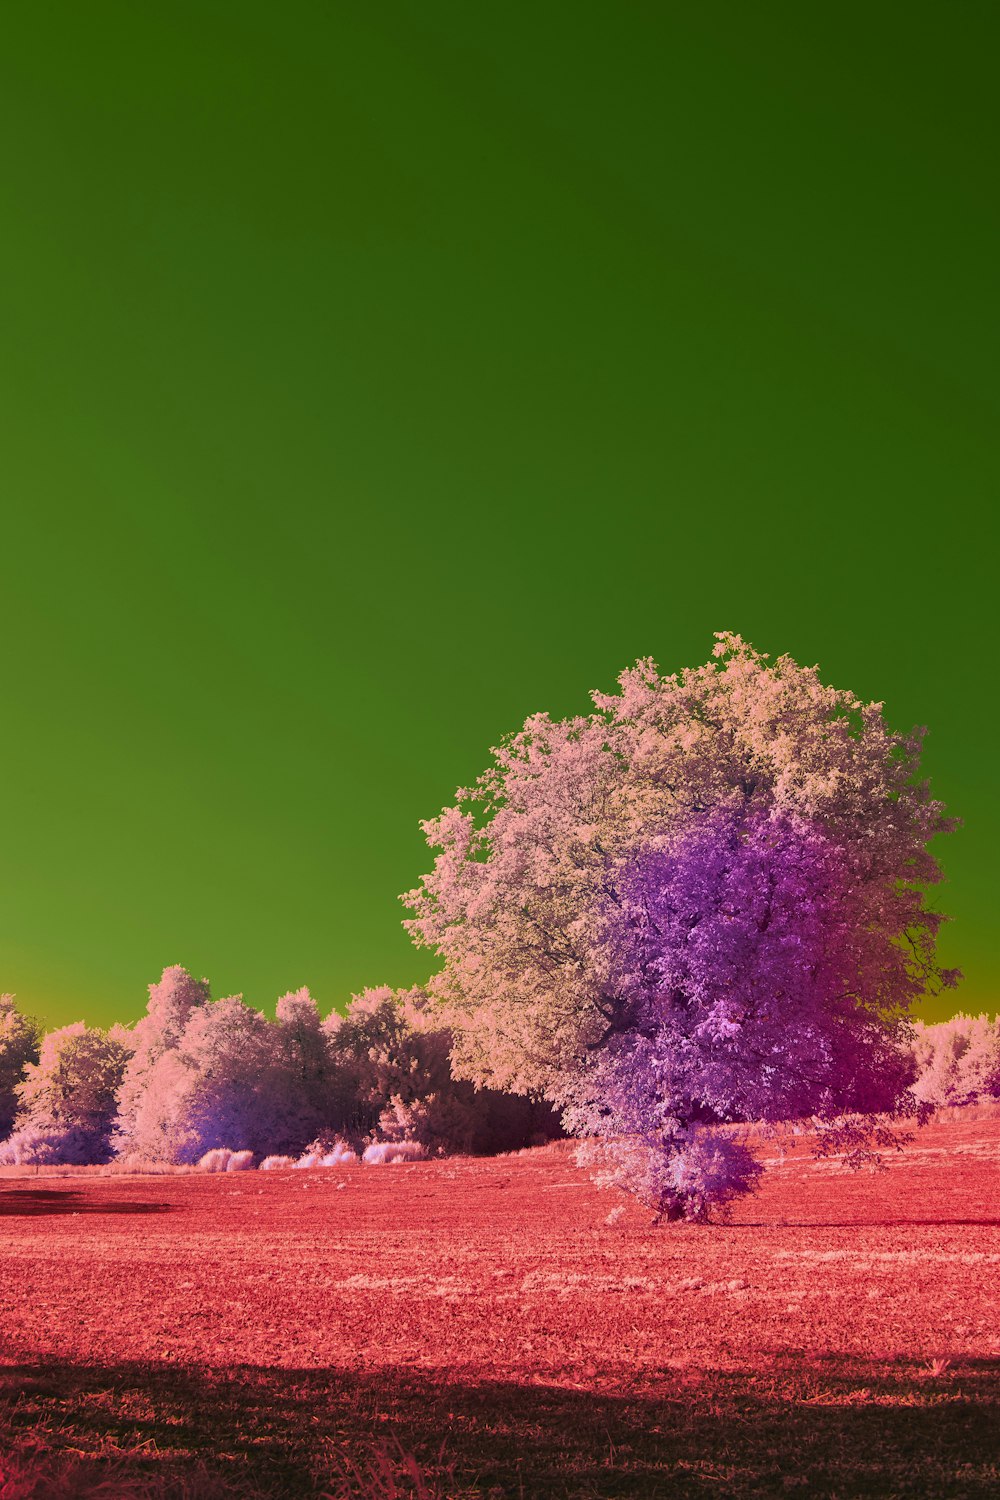 Un árbol en un campo con un cielo verde en el fondo